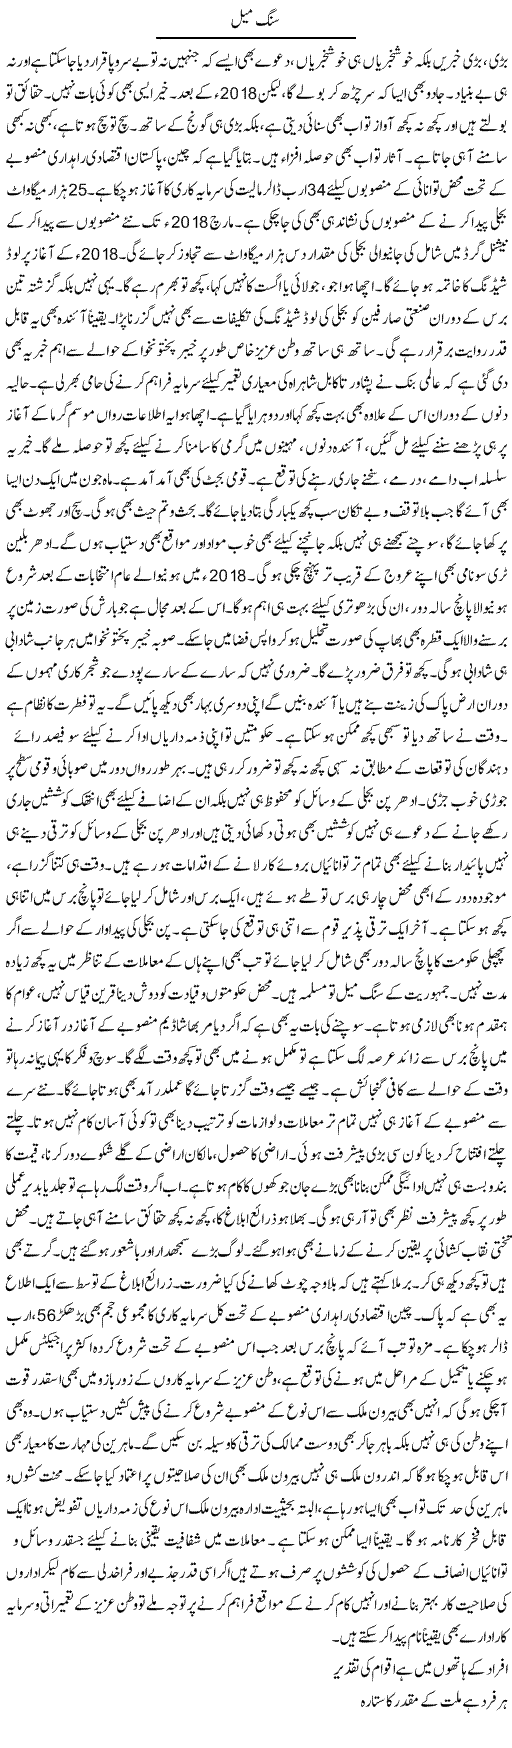 Sang Meel | Muhammad Haroon | Daily Urdu Columns